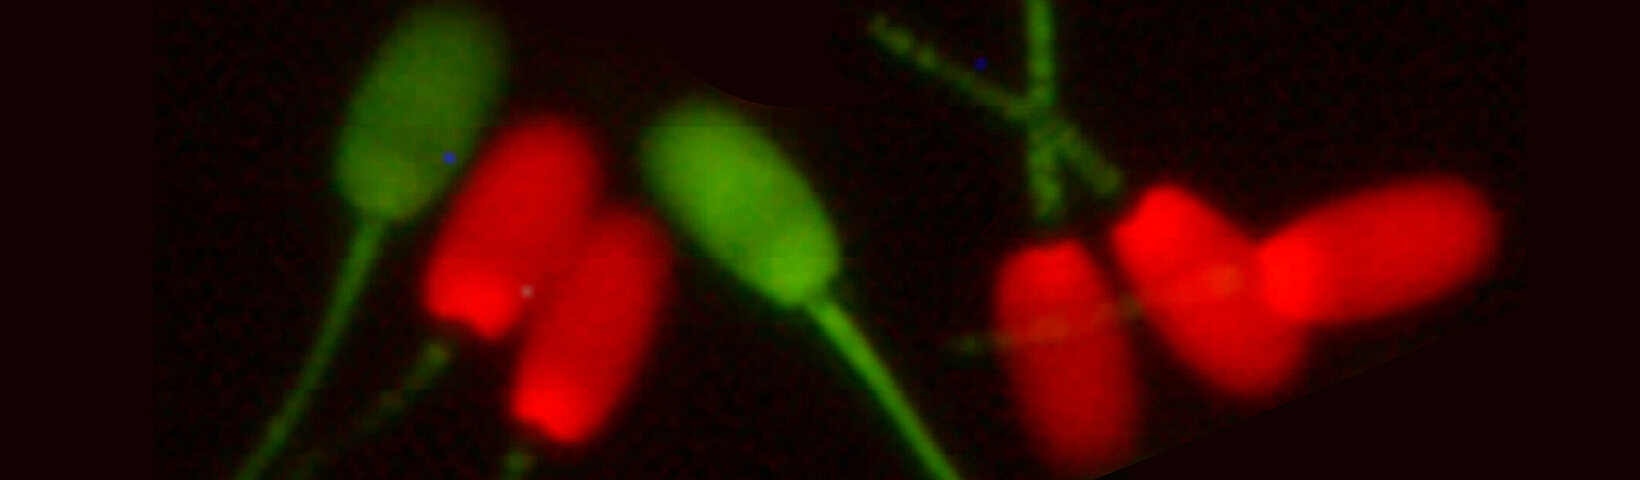 Rote und Grüne Samen vor schwarzem Hintergrund 